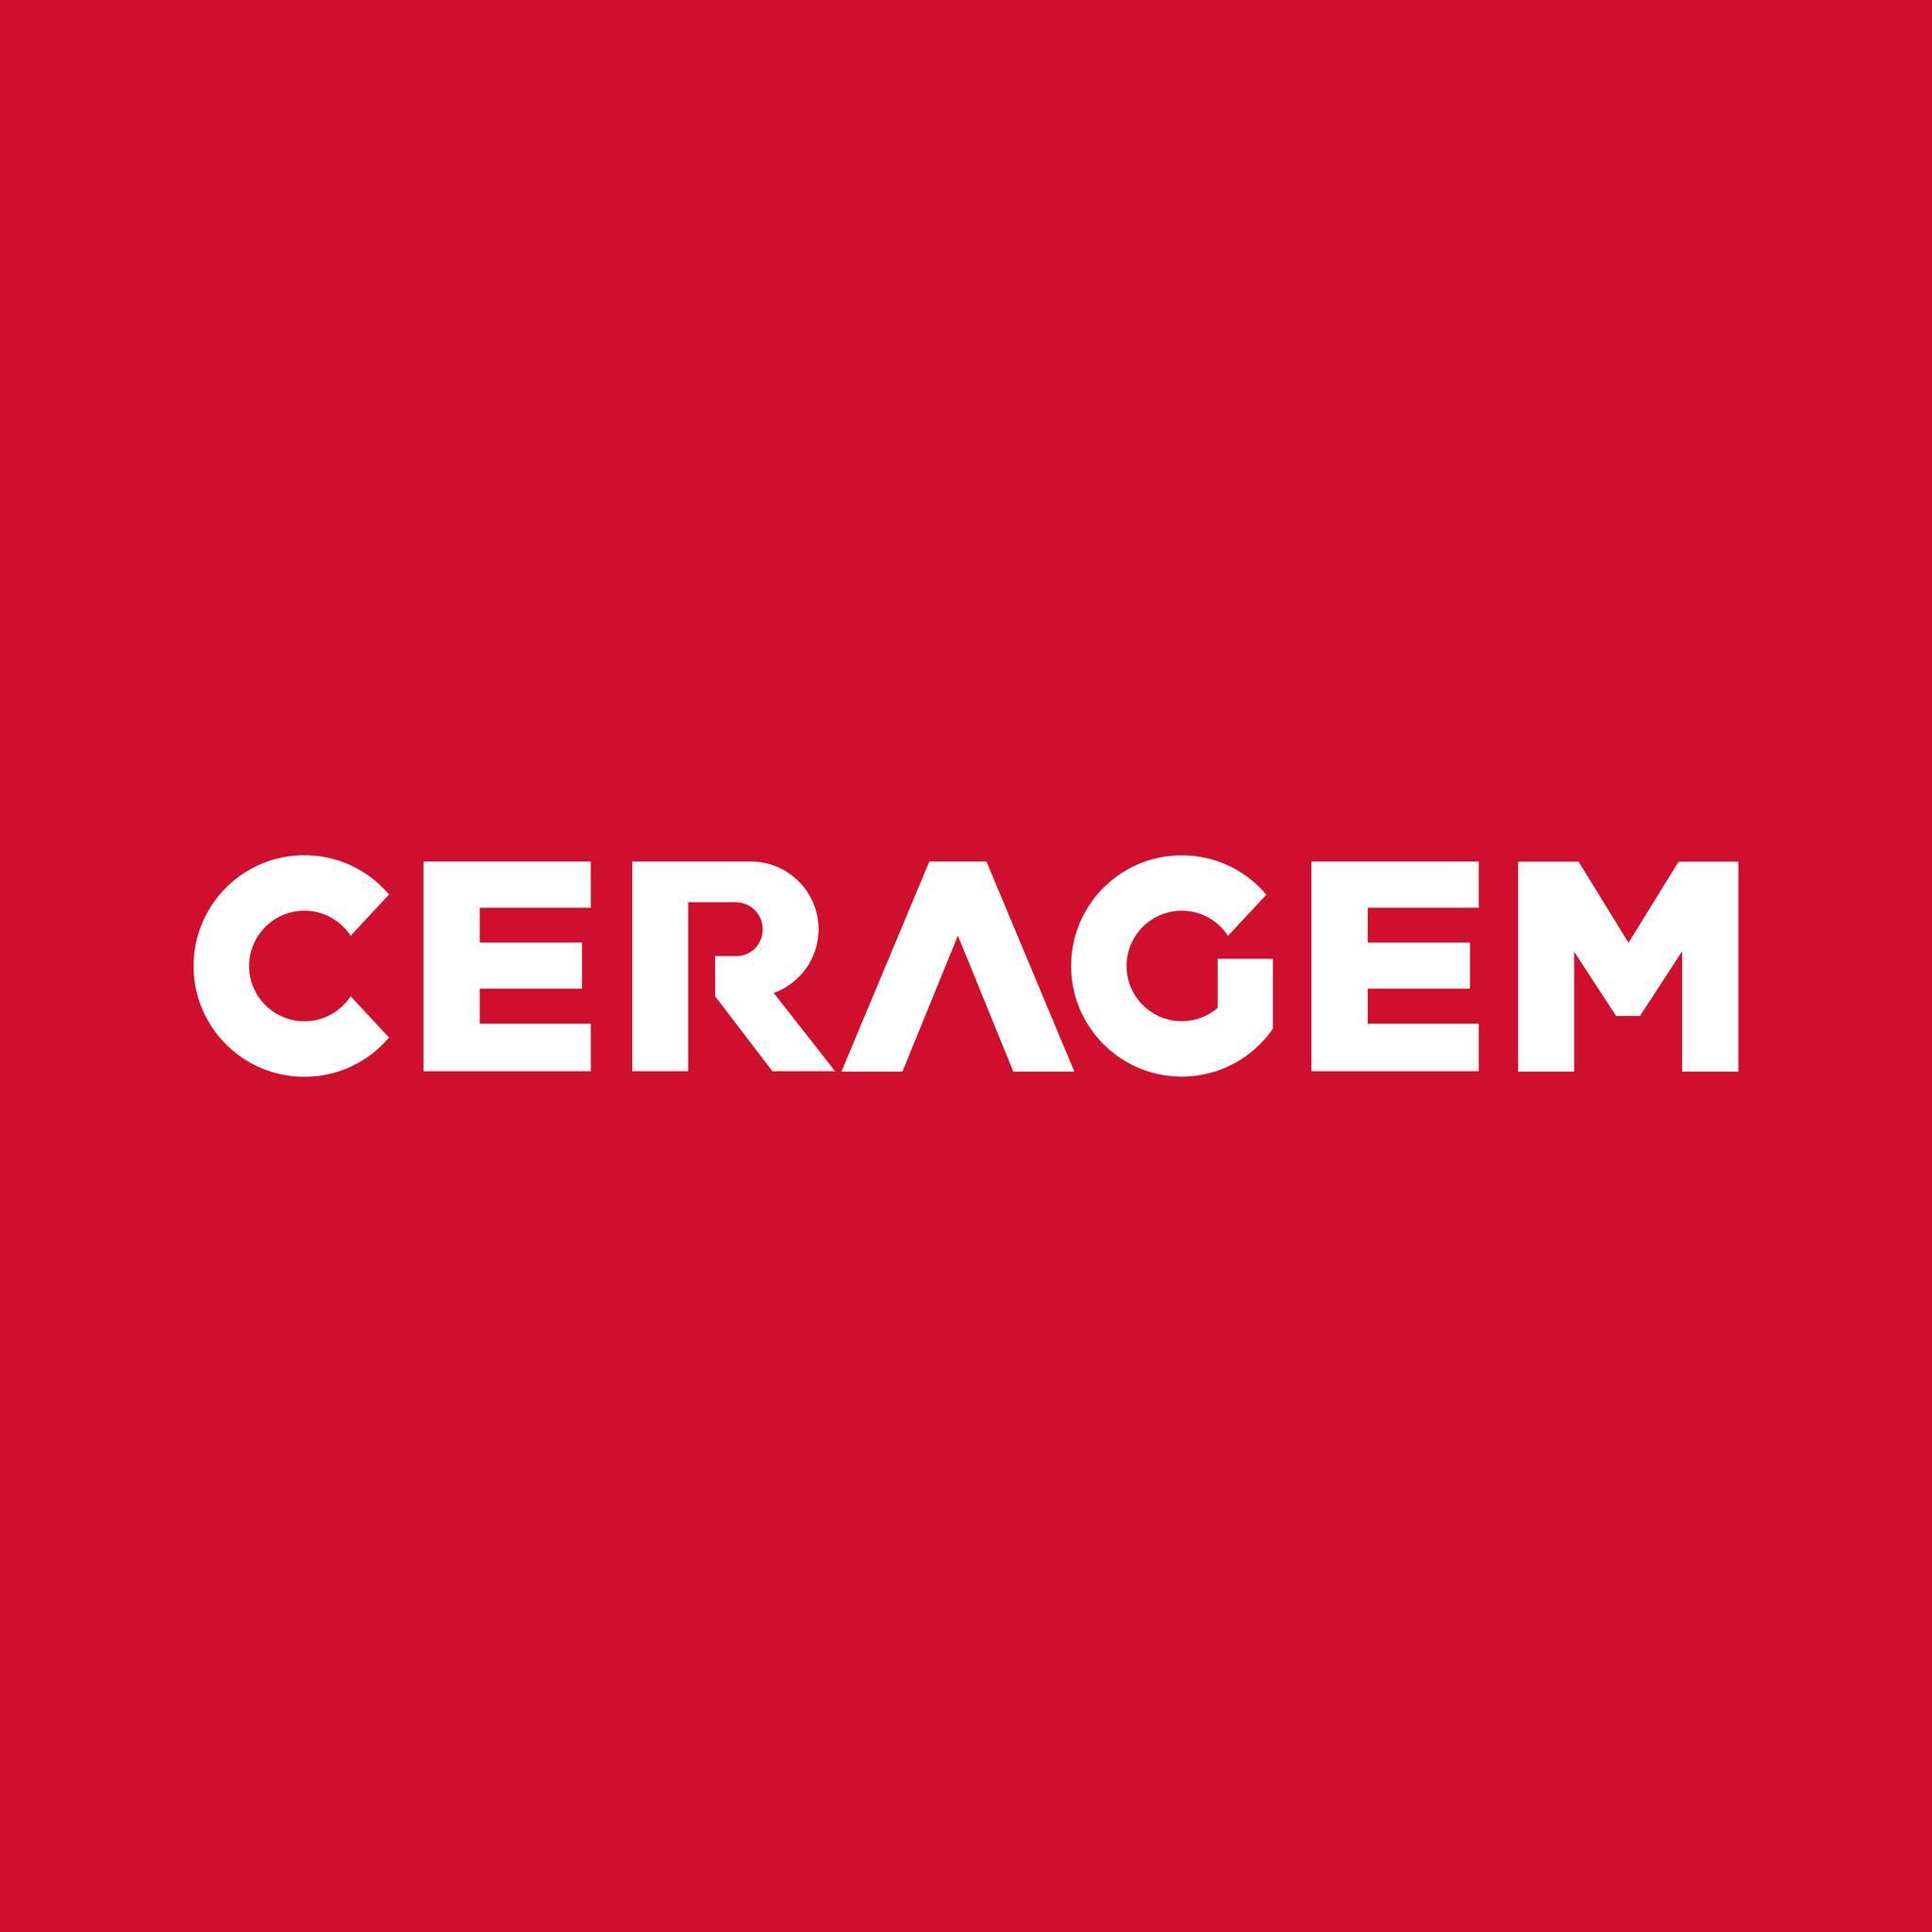 Ceragem Official